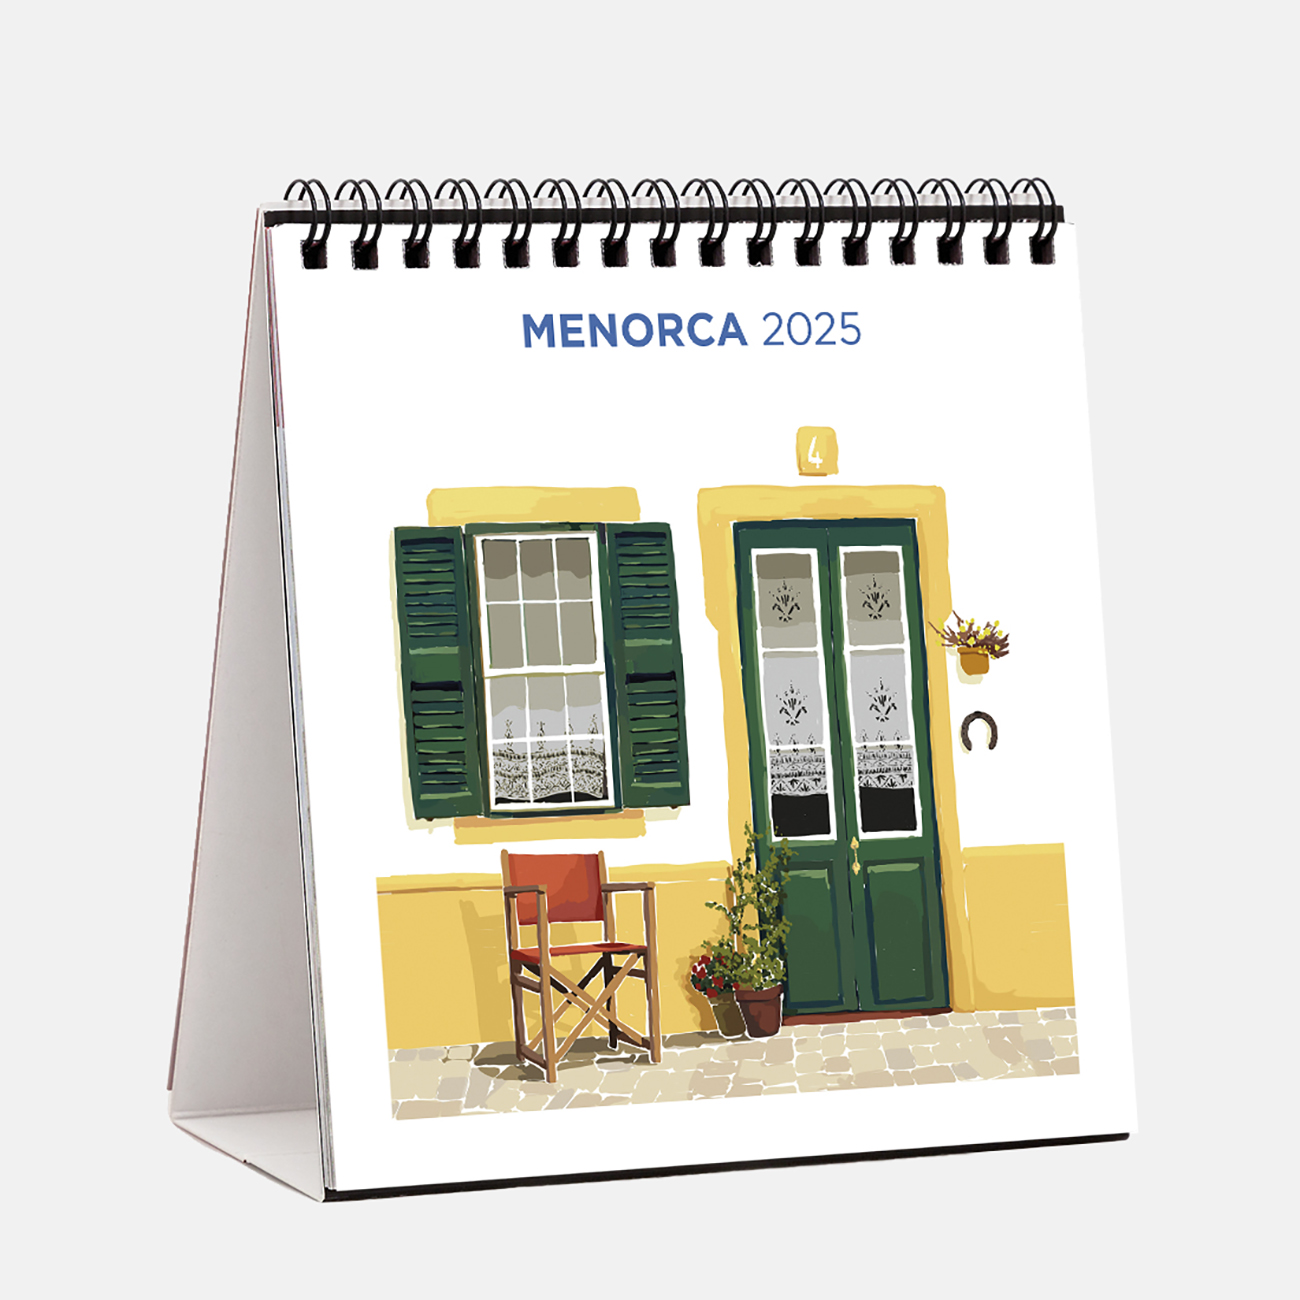 Calendar 2025 Menorca Ilustrado s25me2 calendario sobremesa 2025 menorca